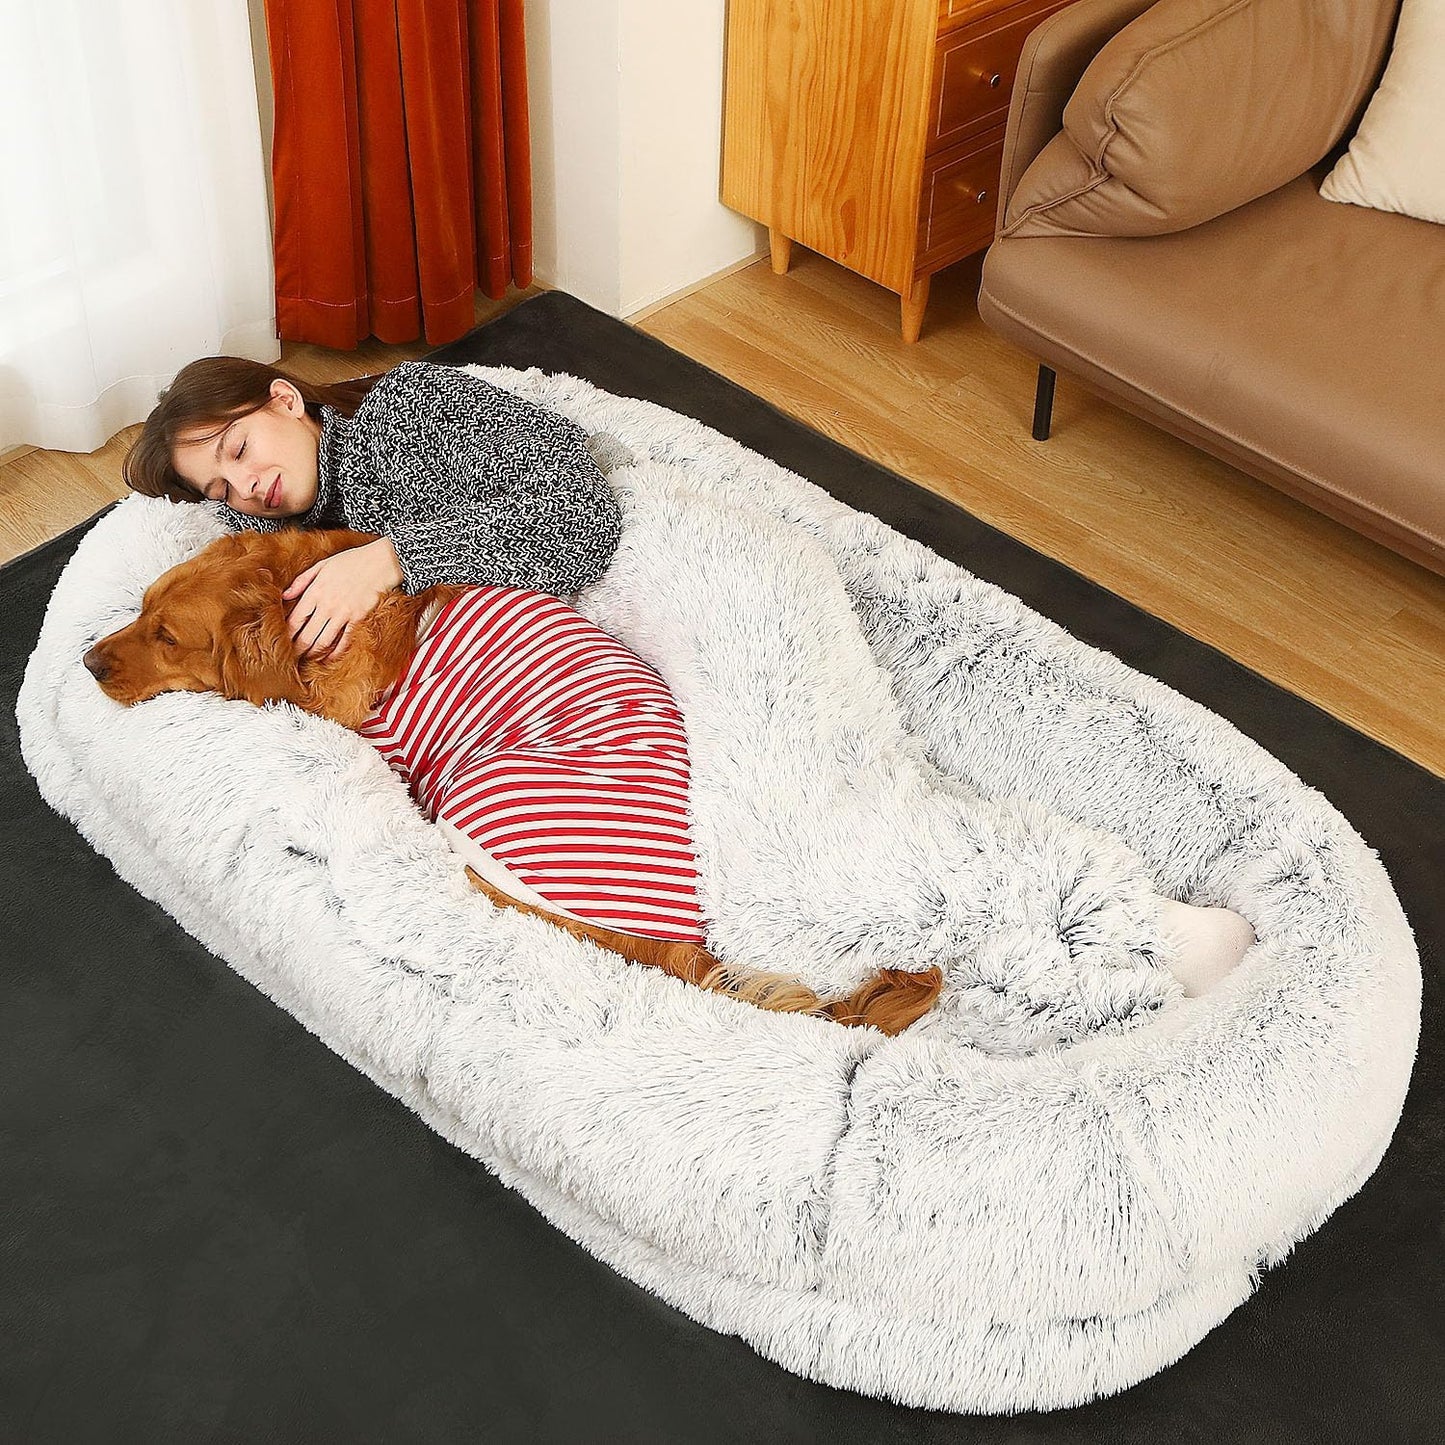 Orthopedic Washable Humans Size Dog Bed